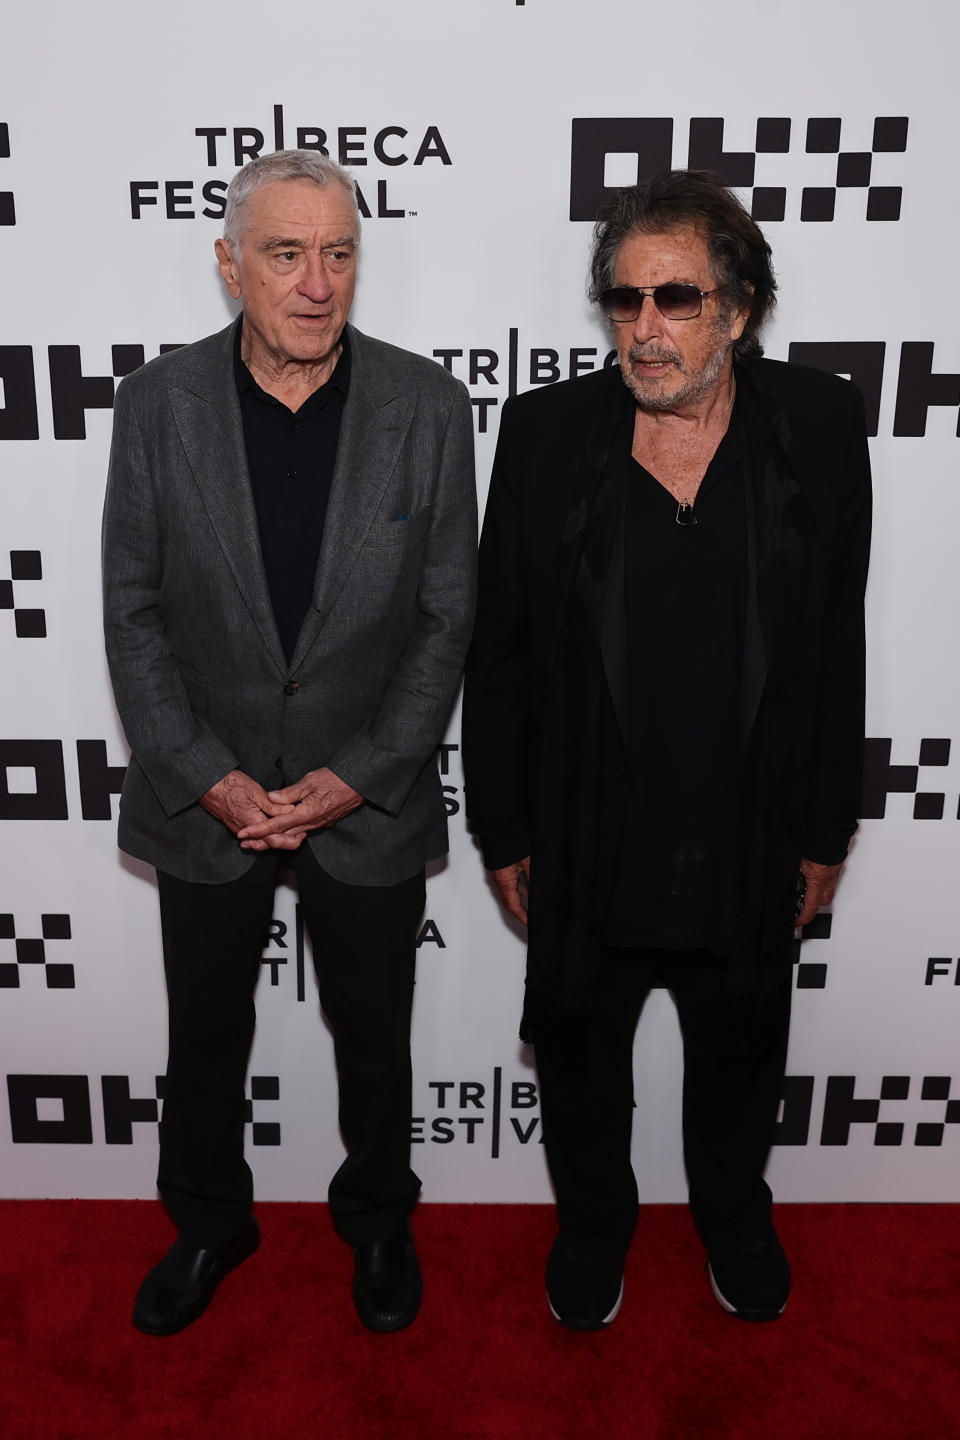 Robert De Niro Commented on Al Pacino’s BabyNews